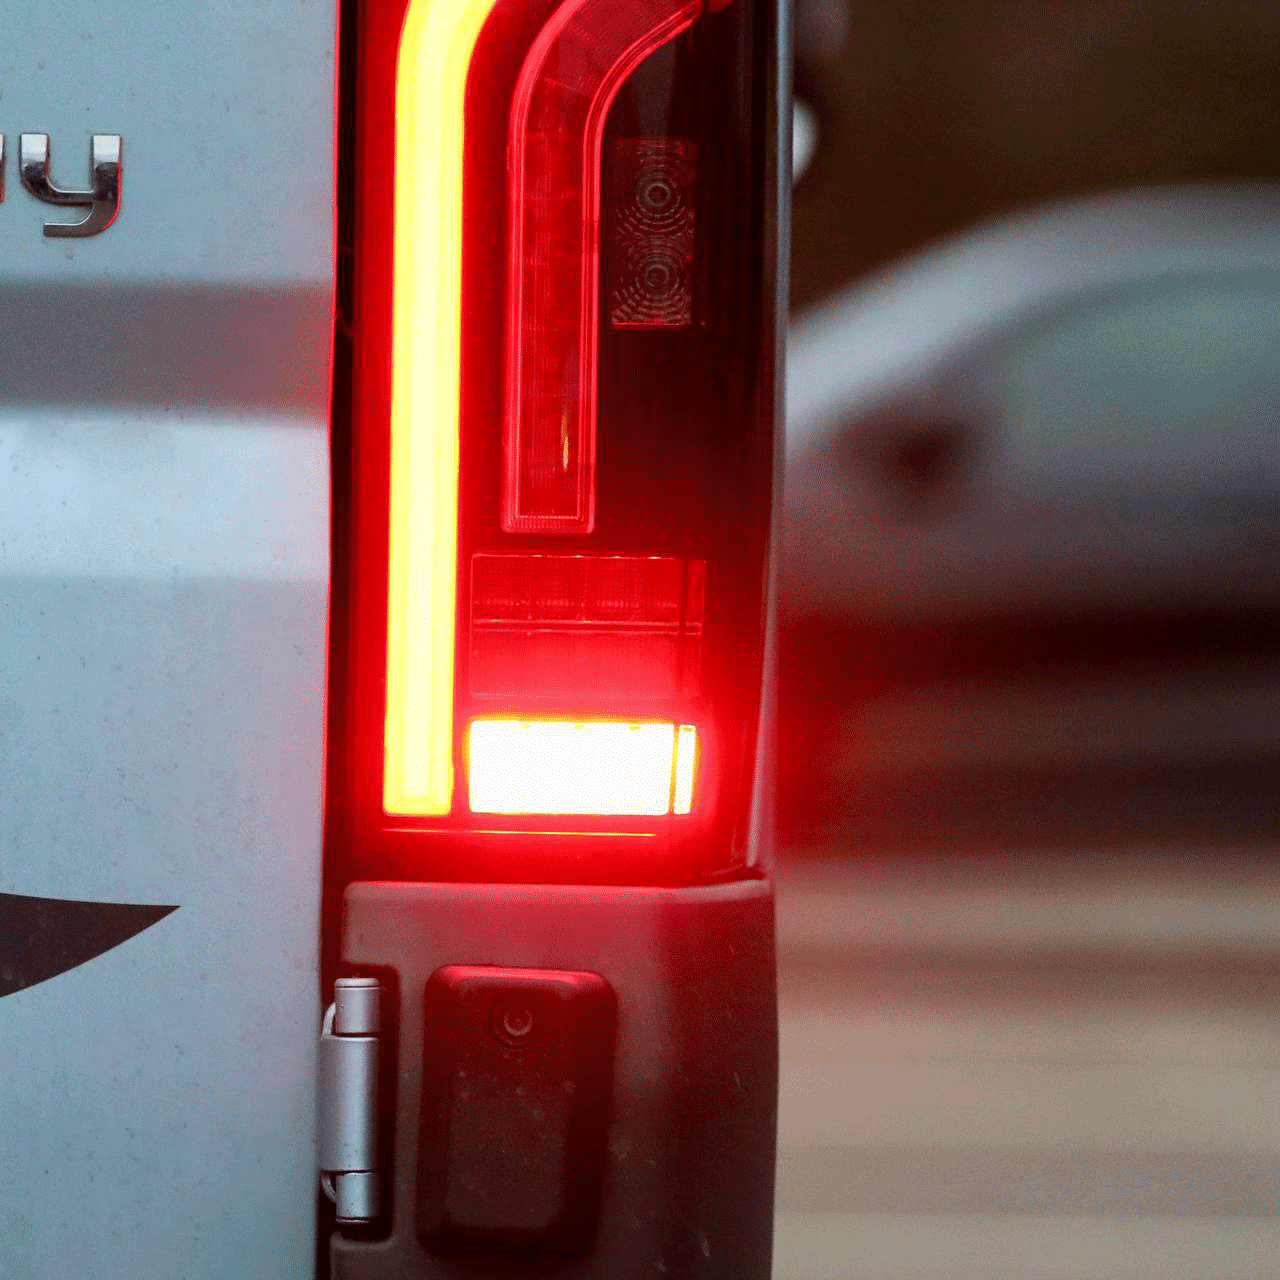 Conjunto completo de luces traseras LED para Peugeot Boxer, Grupo de luces traseras, Unidad de luz trasera, Luz ahumada de repuesto, Van-X, NUEVO